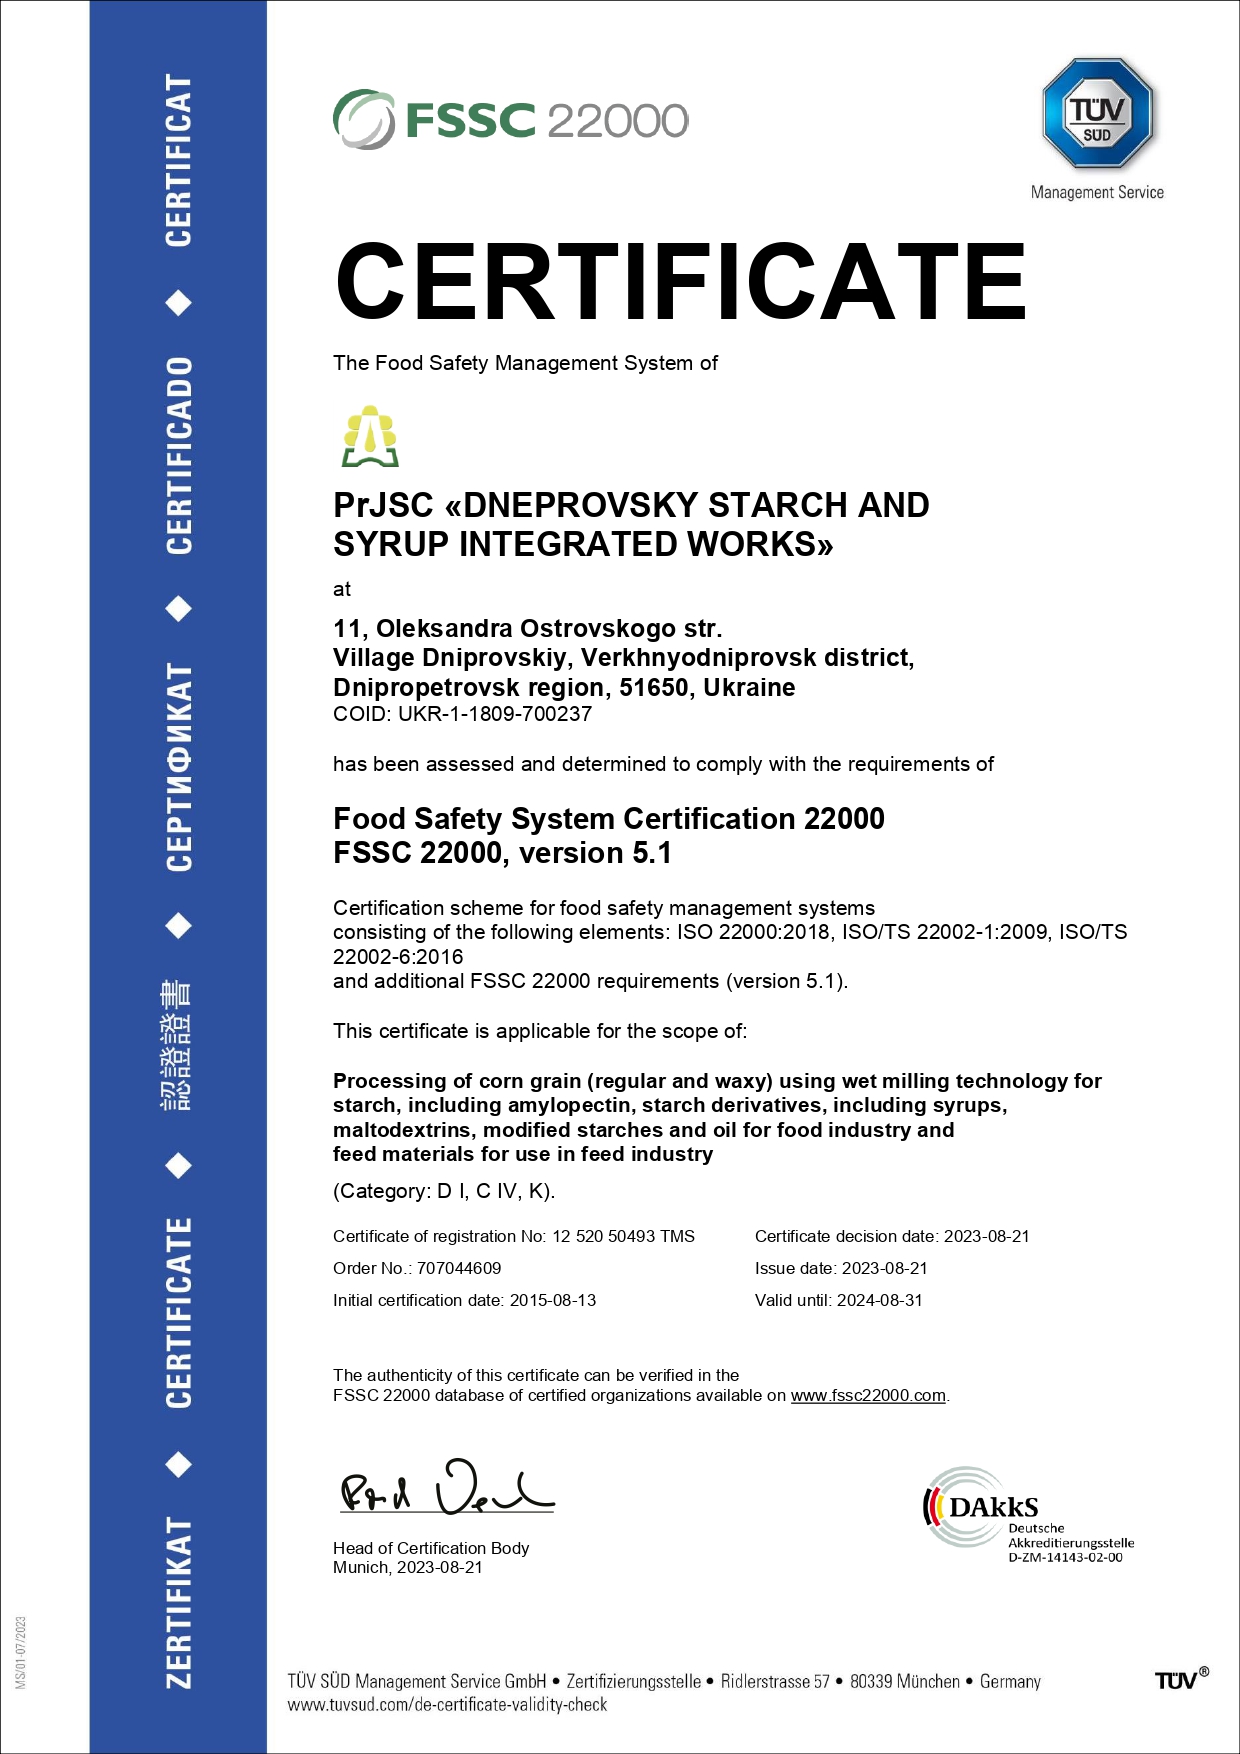 FSSC 22000 DNEPROVSKY STARCH AND SYROP INTEGRATED WORKS, PrJSC